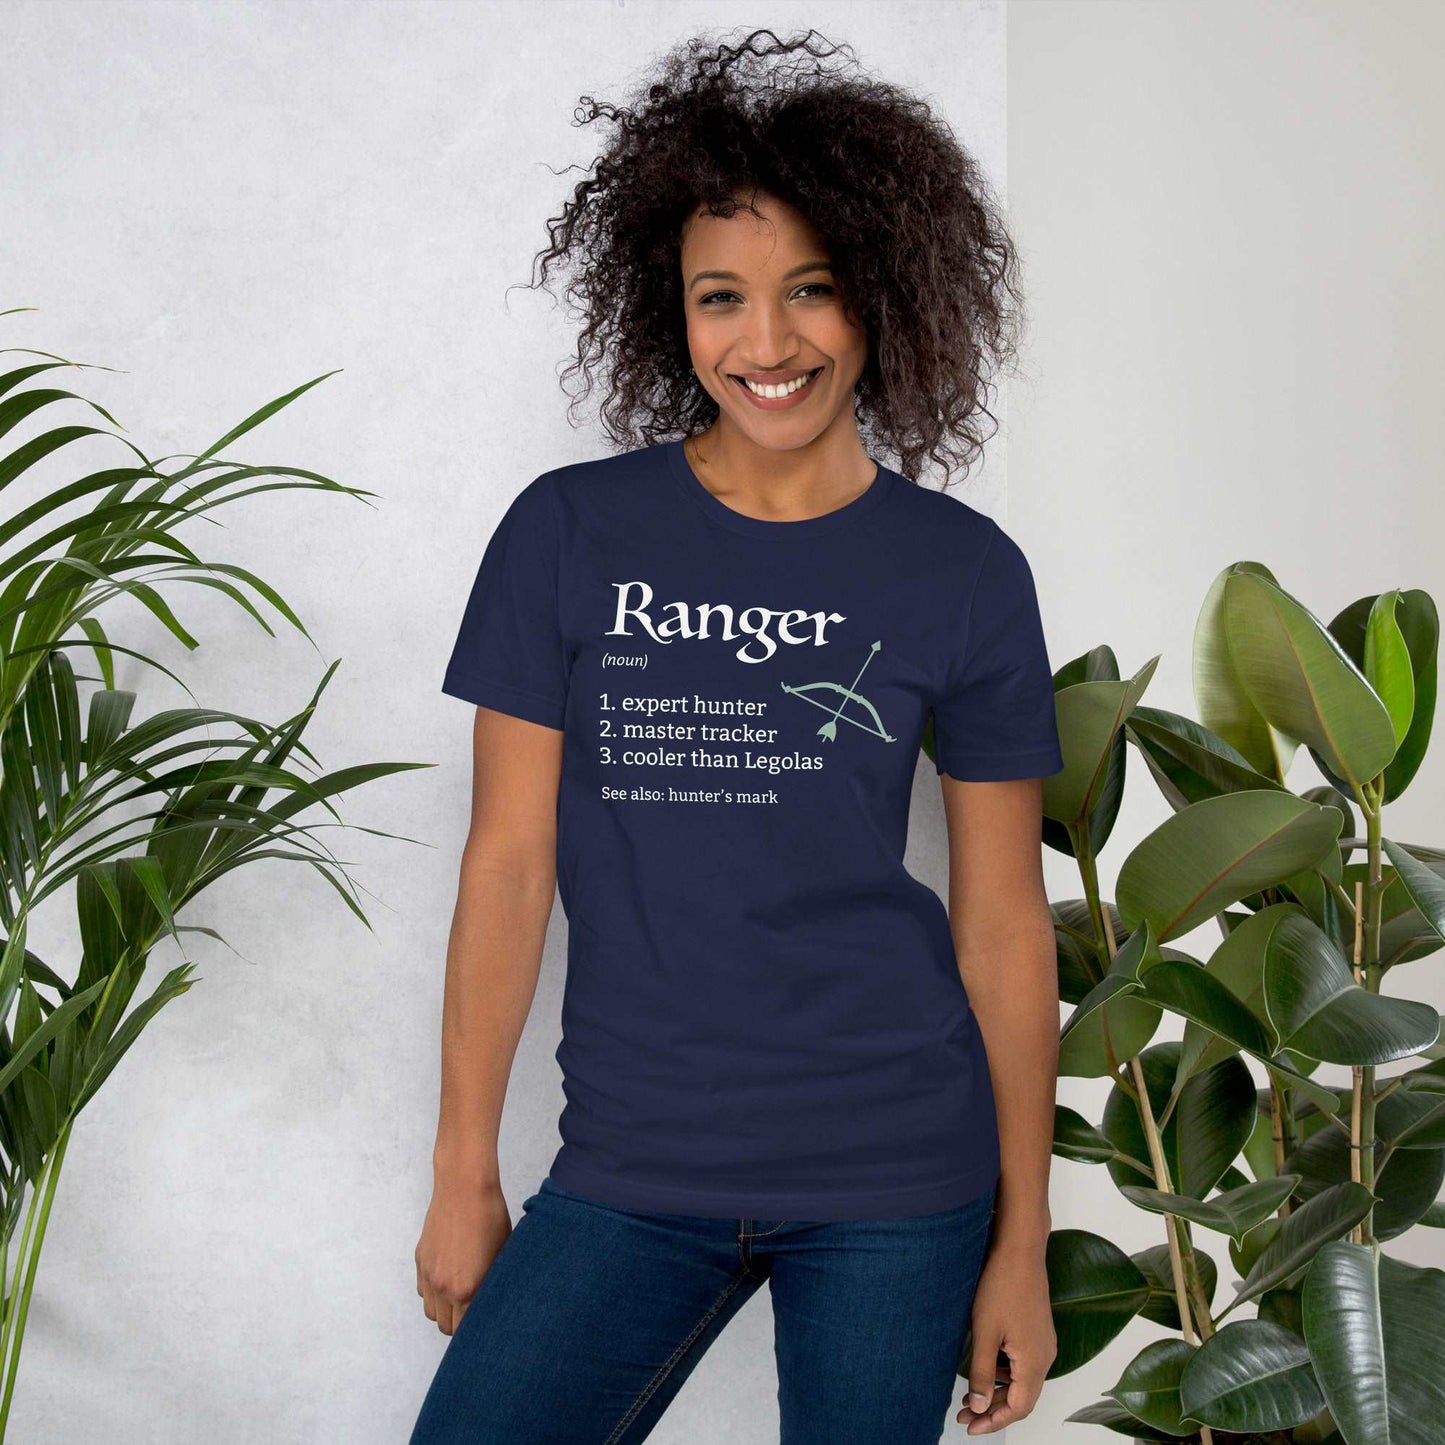 Ranger Class Definition T-Shirt – Funny DnD Definition Tee T-Shirt